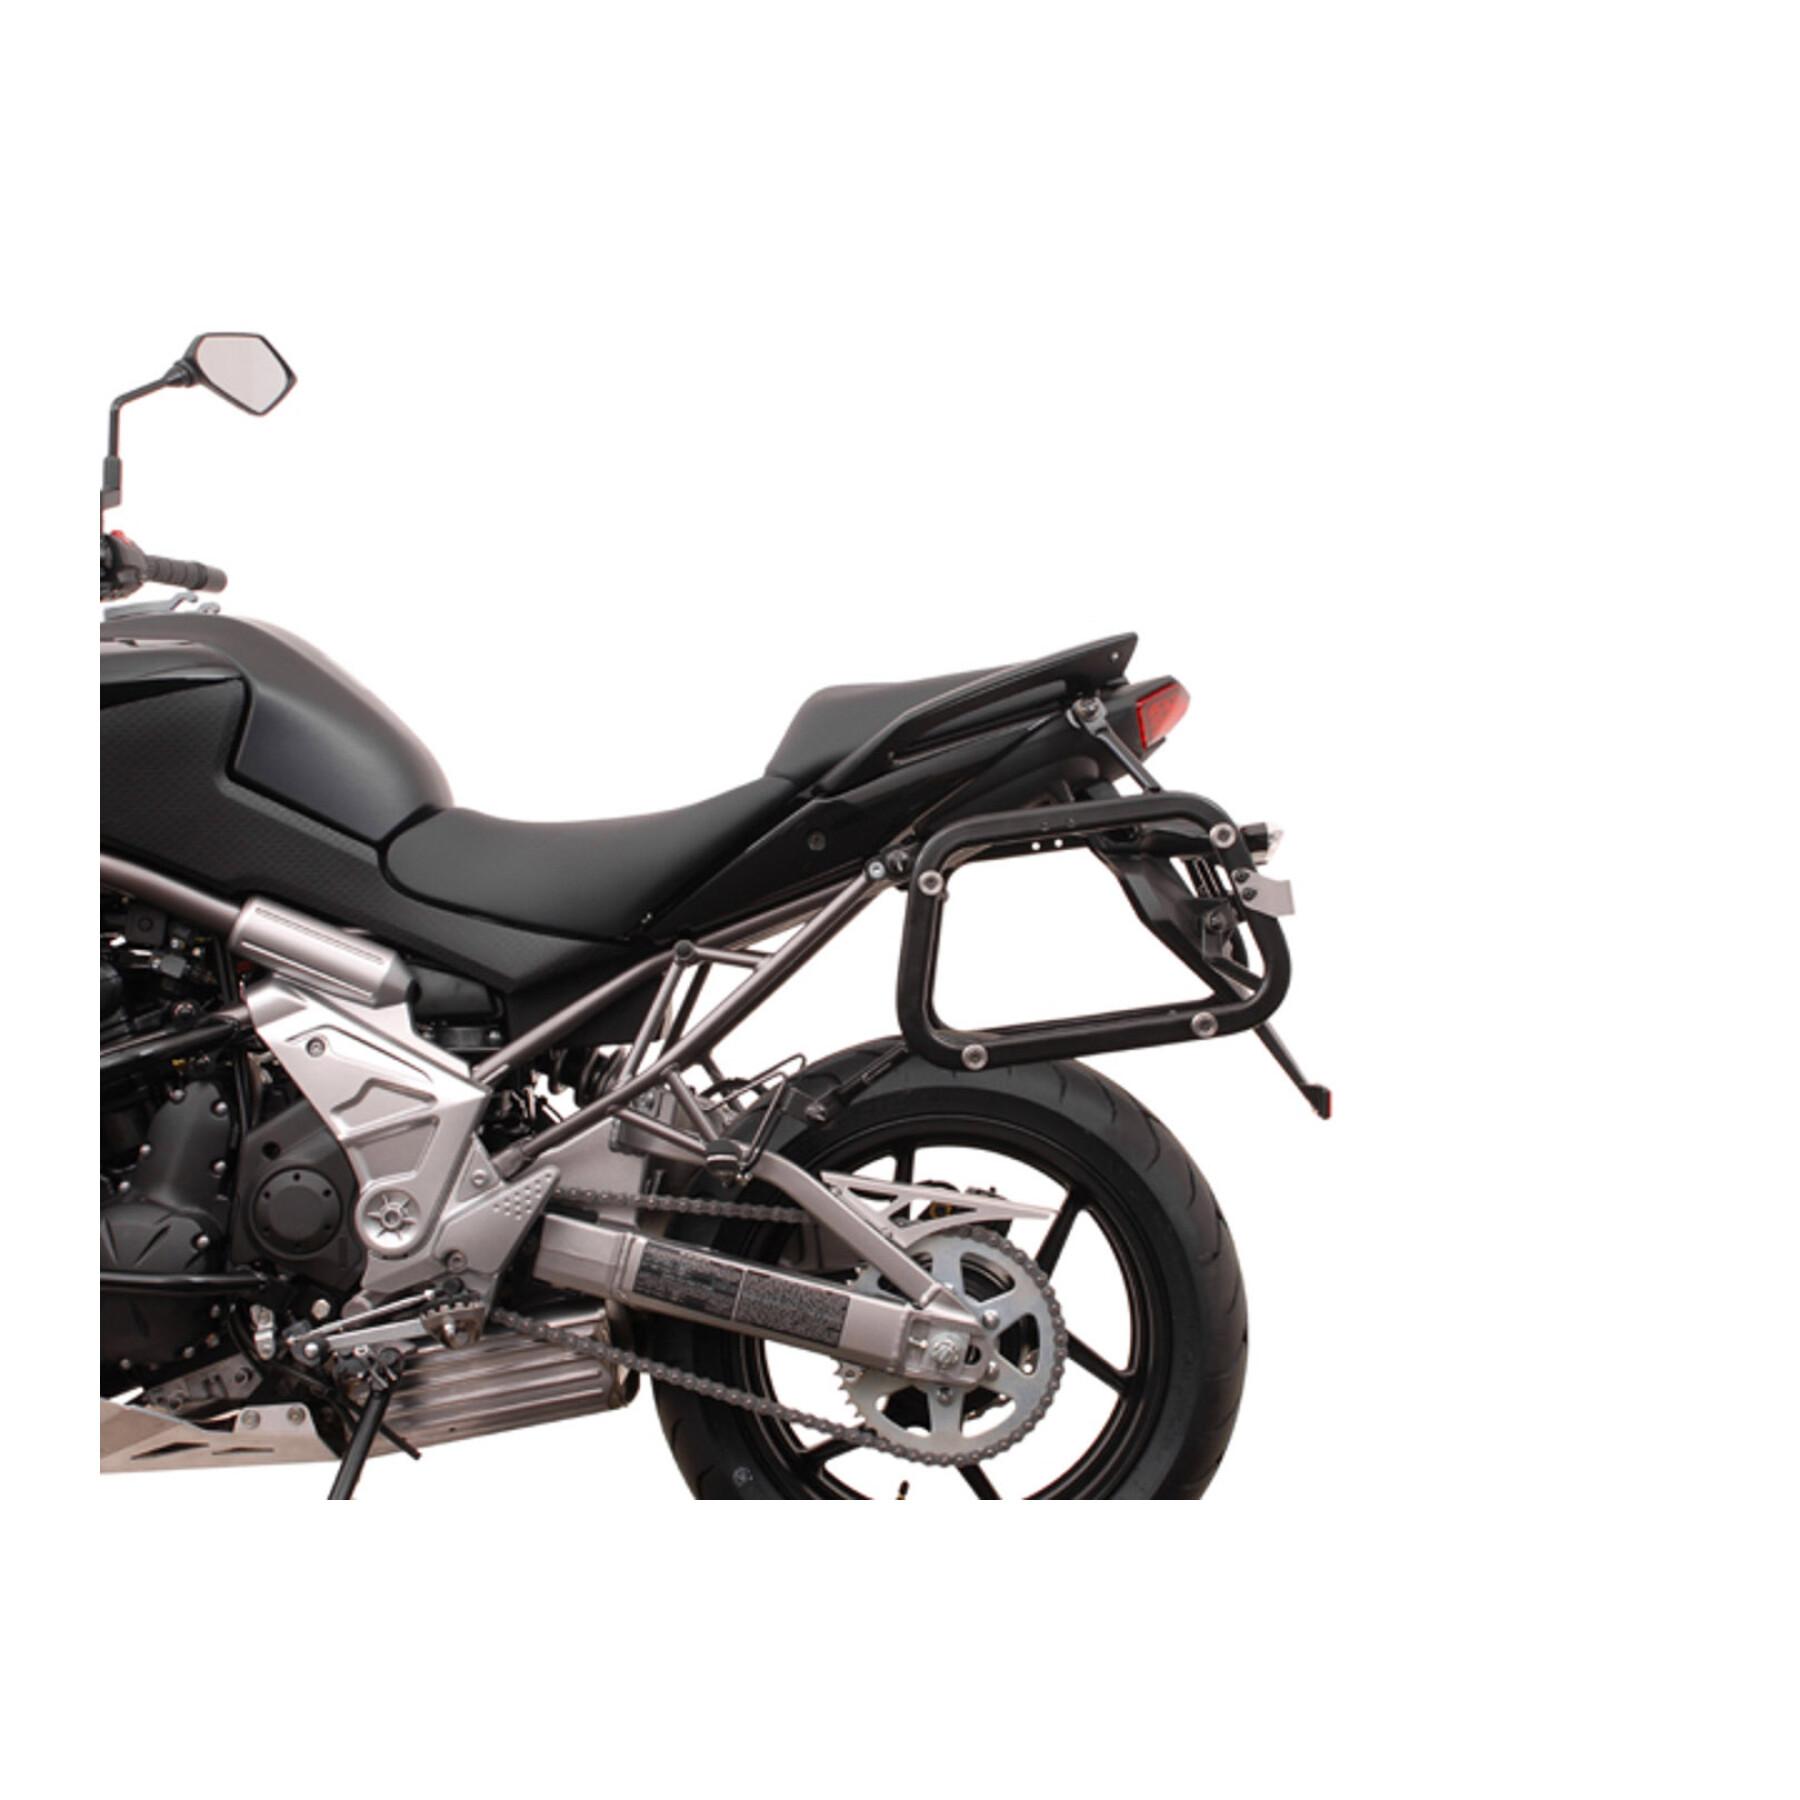 Sidostöd för motorcykel Sw-Motech Evo. Kawasaki Versys 650 (07-14)